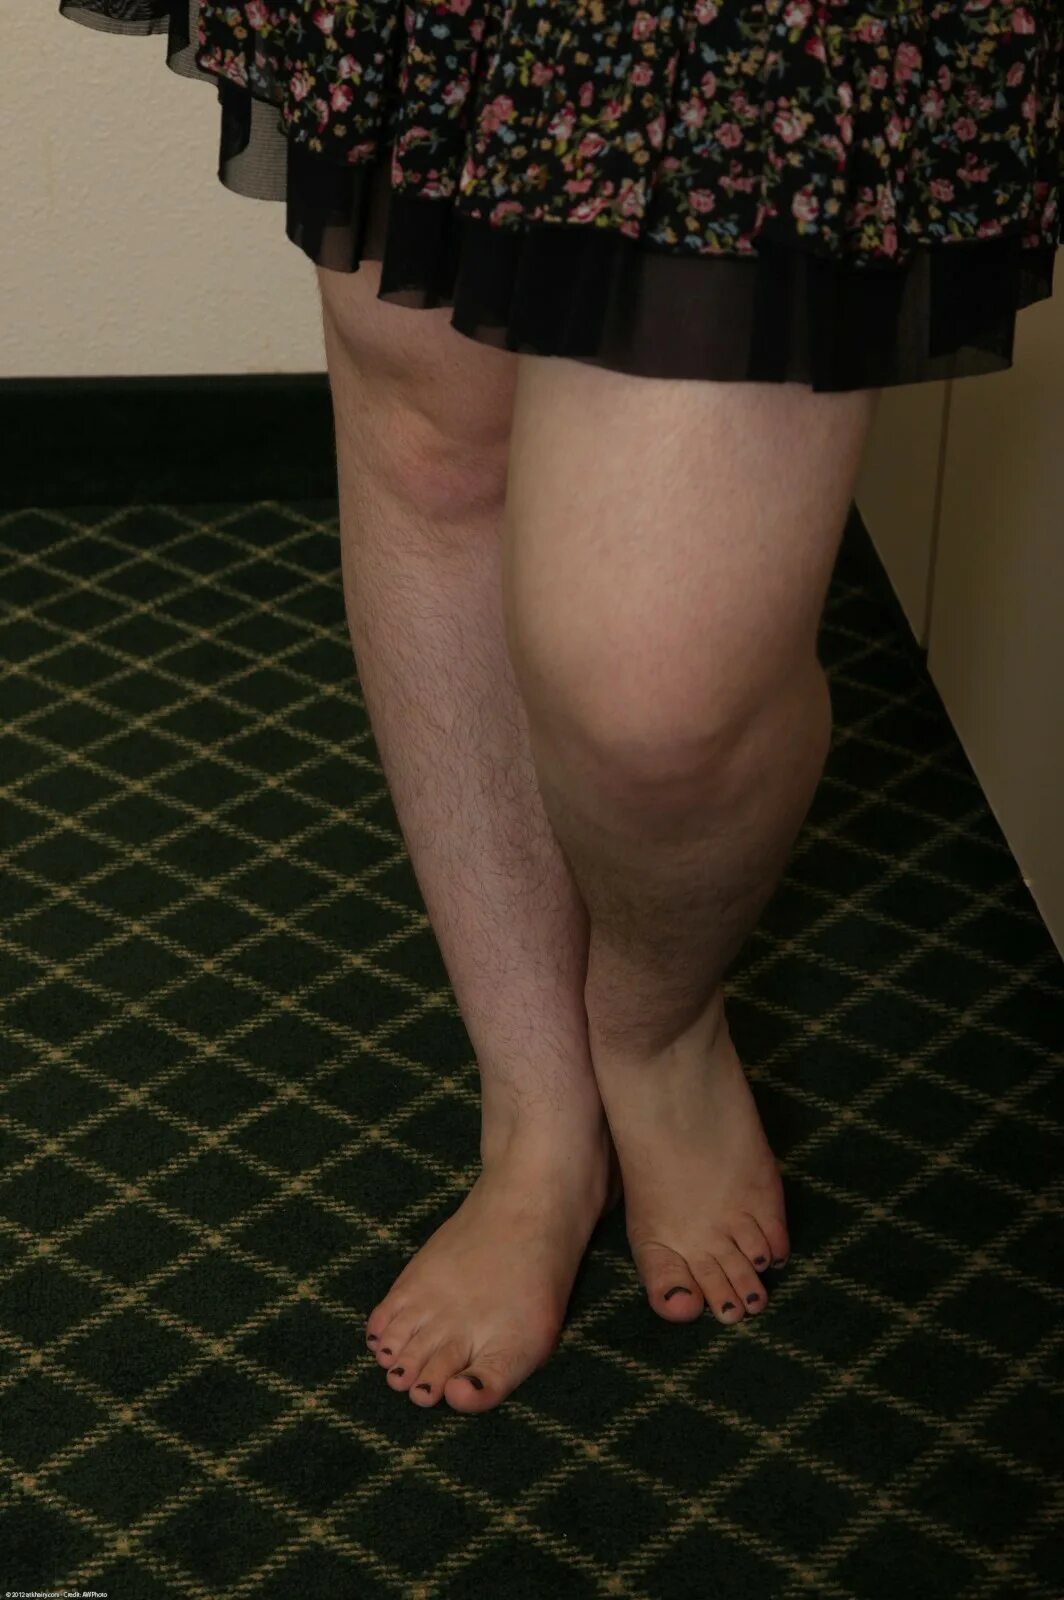 Волосатые ножки женщины. Не ьритые женские ноги. Волосатые женские ножки. Юбка сволсатыми ногами.